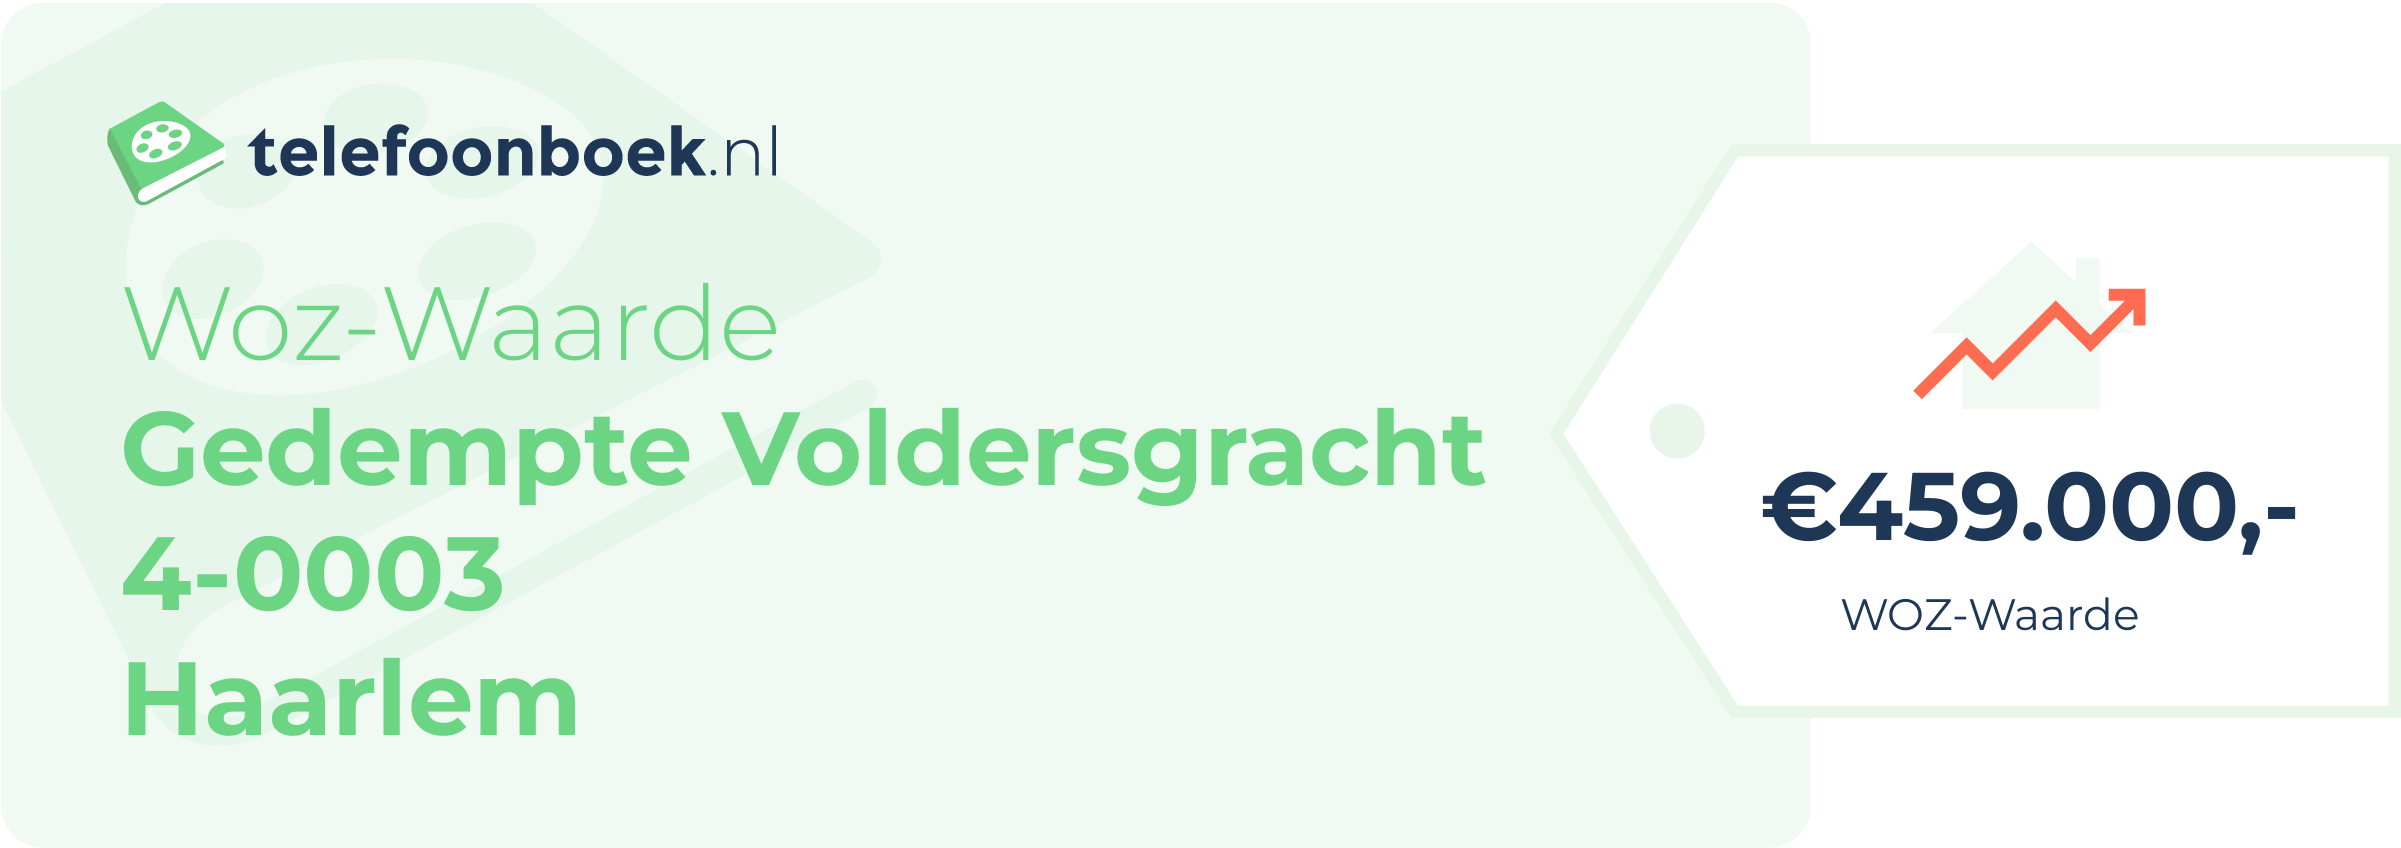 WOZ-waarde Gedempte Voldersgracht 4-0003 Haarlem